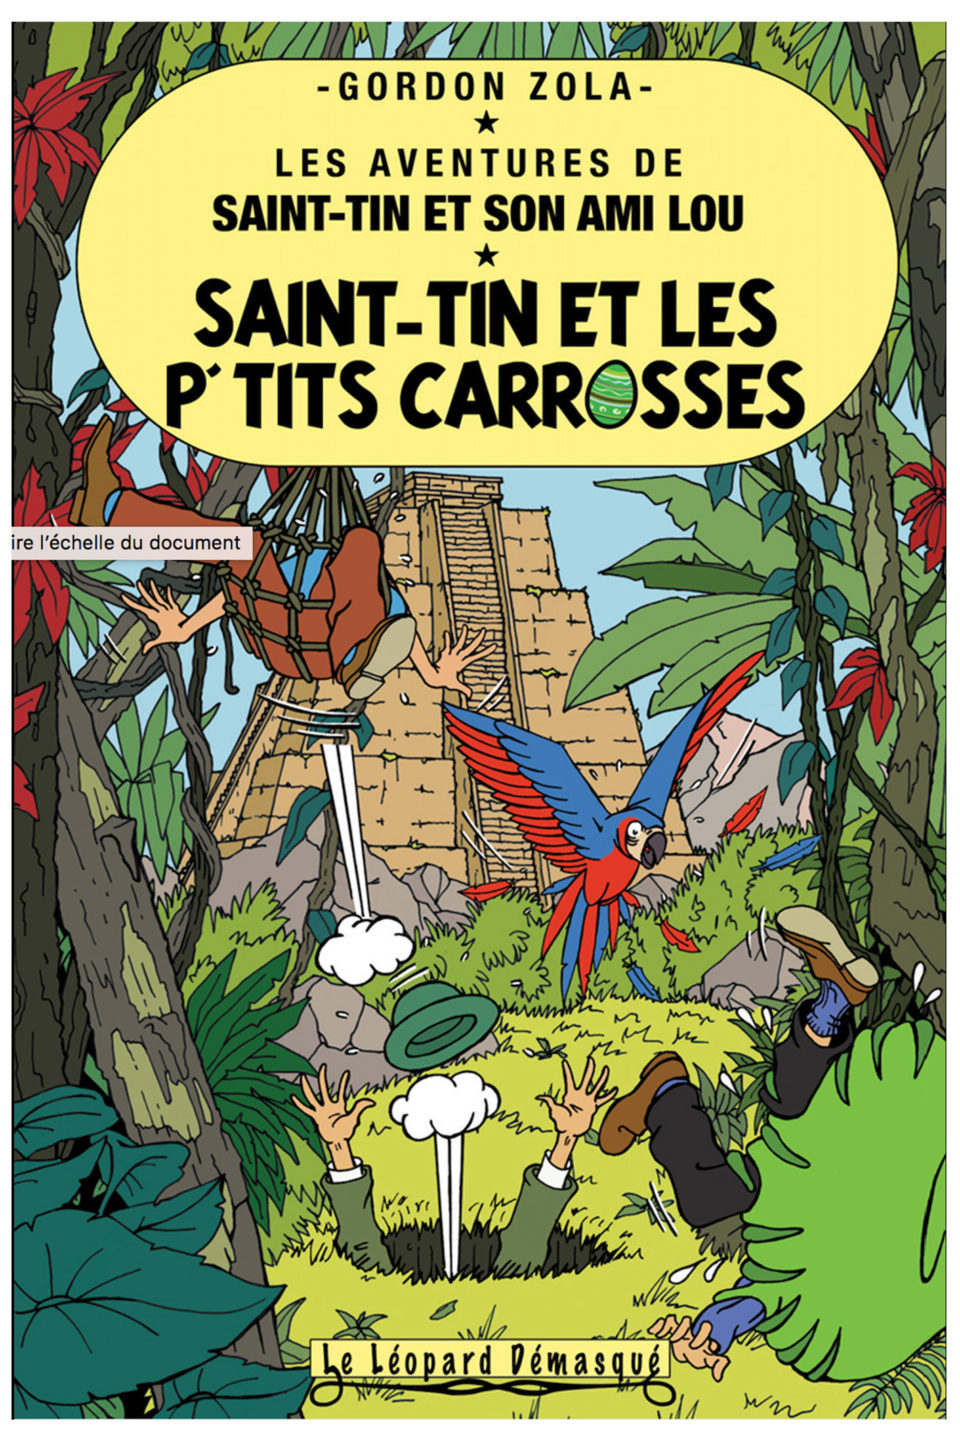 saint-tin-et-les-p’tits-carrosses